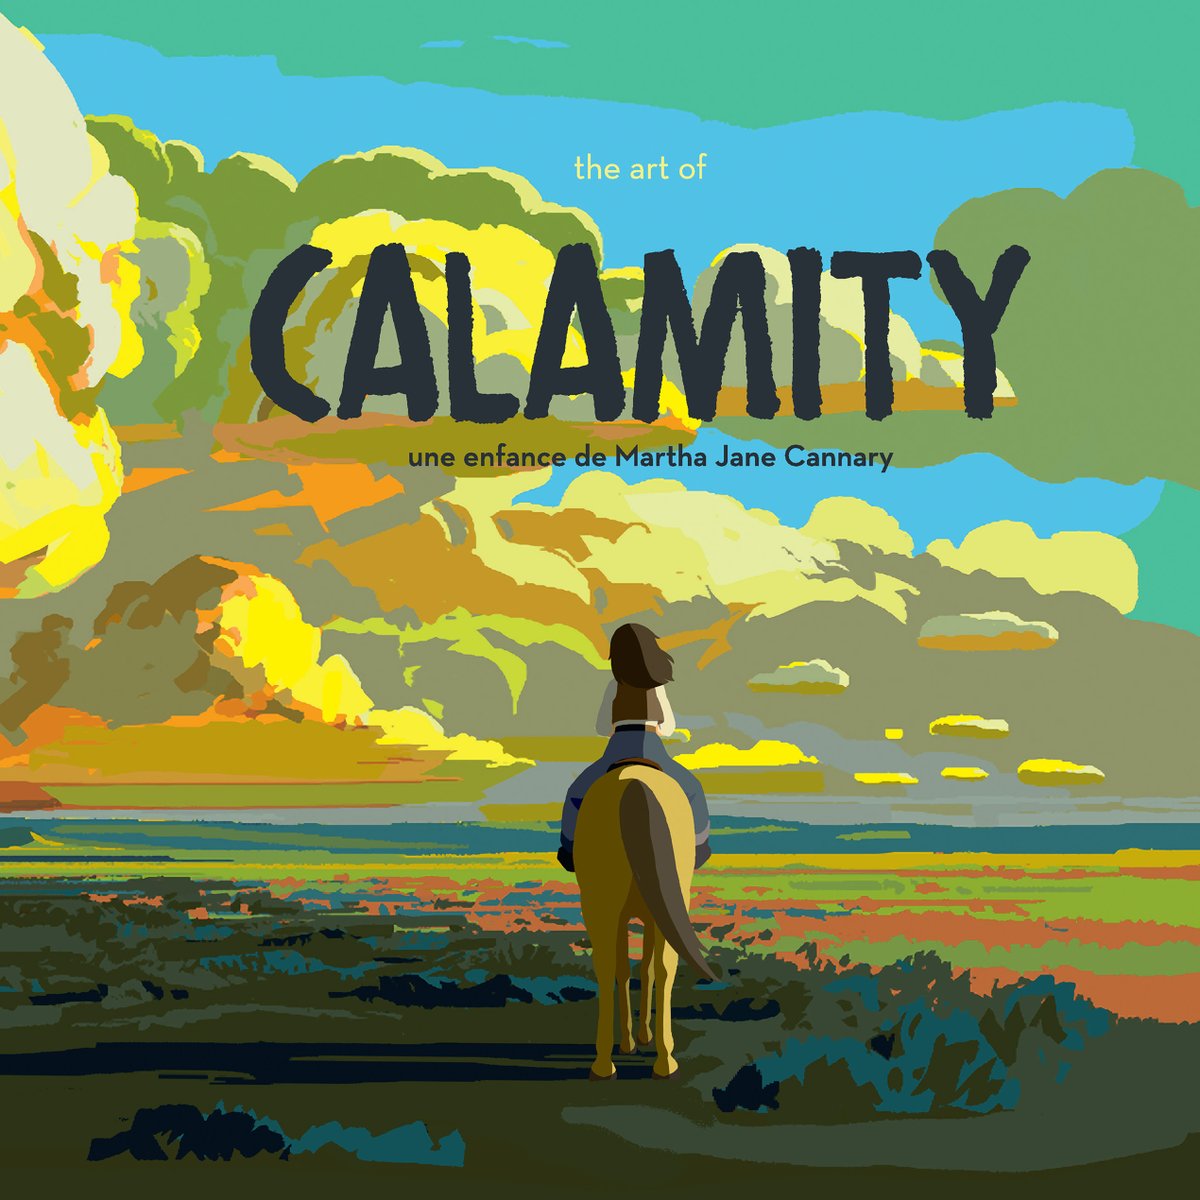 🎄🎁🎅 Noël approche 🎅🎁🎄 Notre Art of Calamity est disponible ici : calamityfilm.bigcartel.com si vous cherchez un beau cadeau à déposer sous le sapin ! Commandes de Noël possibles jusqu'au 16 décembre ✨